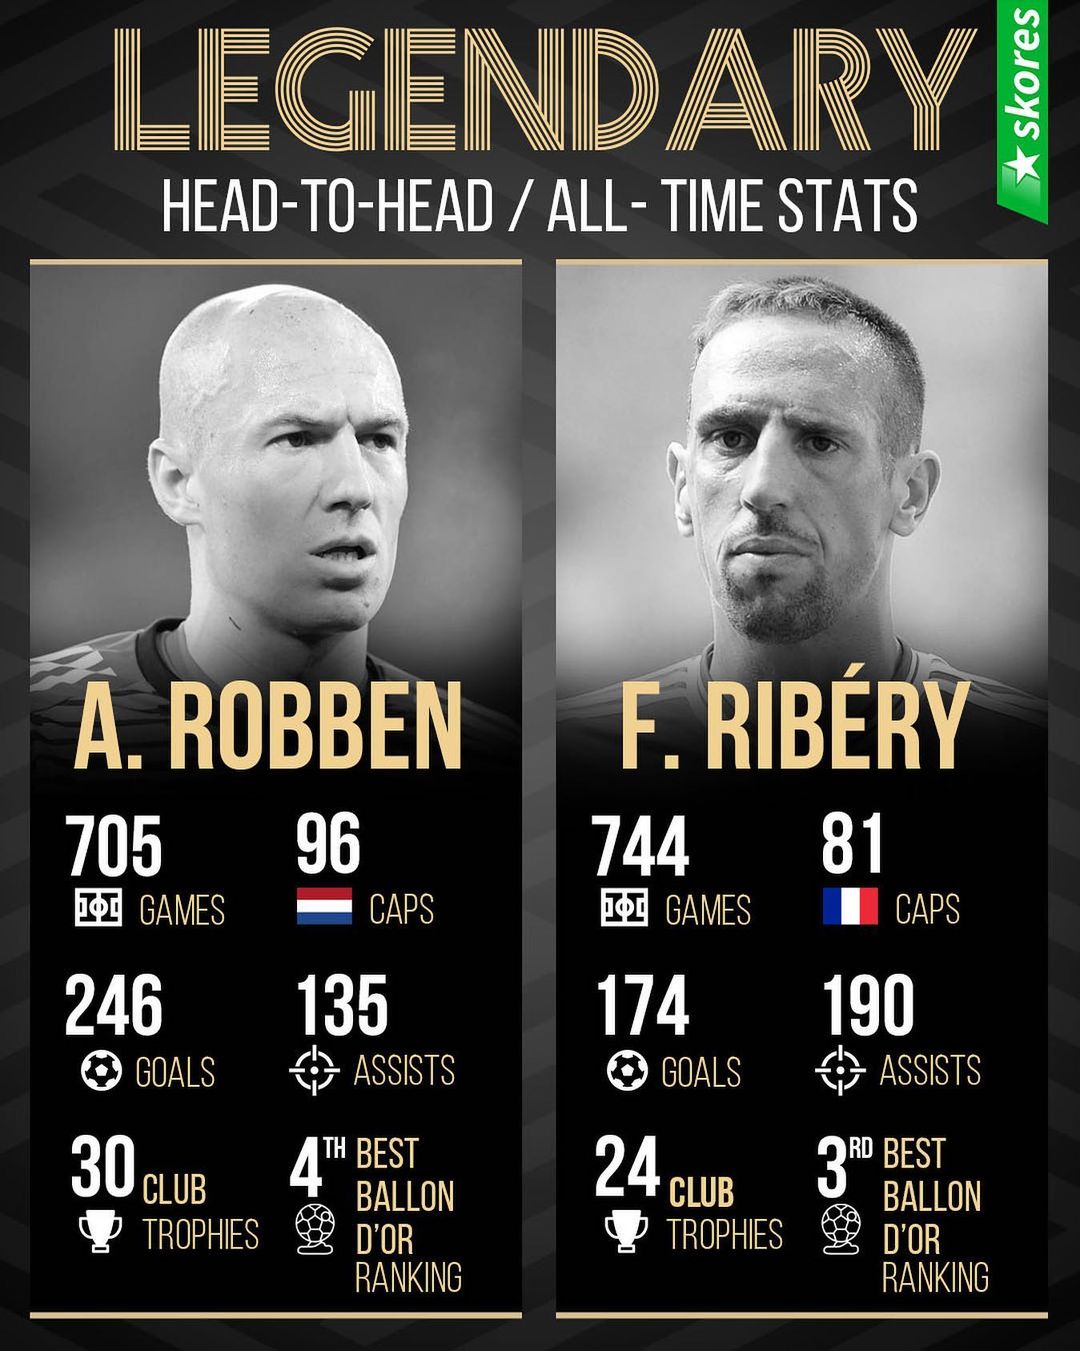 Robben vs Ribery, ai mới là người xuất sắc hơn? - Bóng Đá